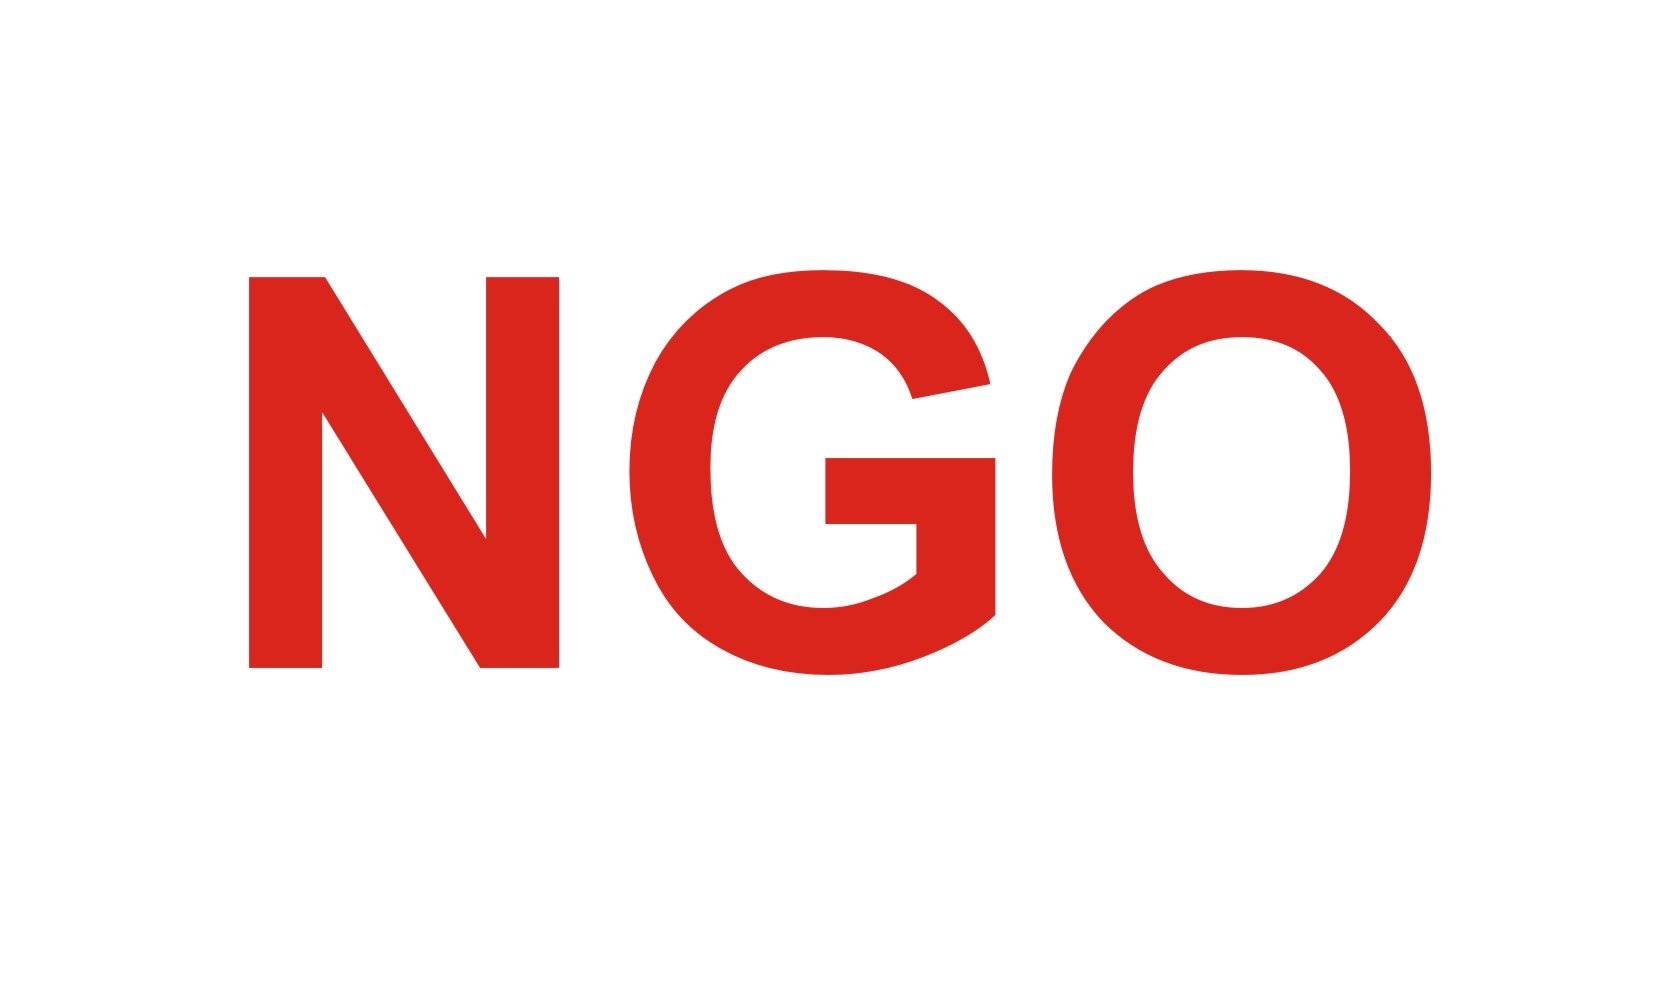 NGO logo